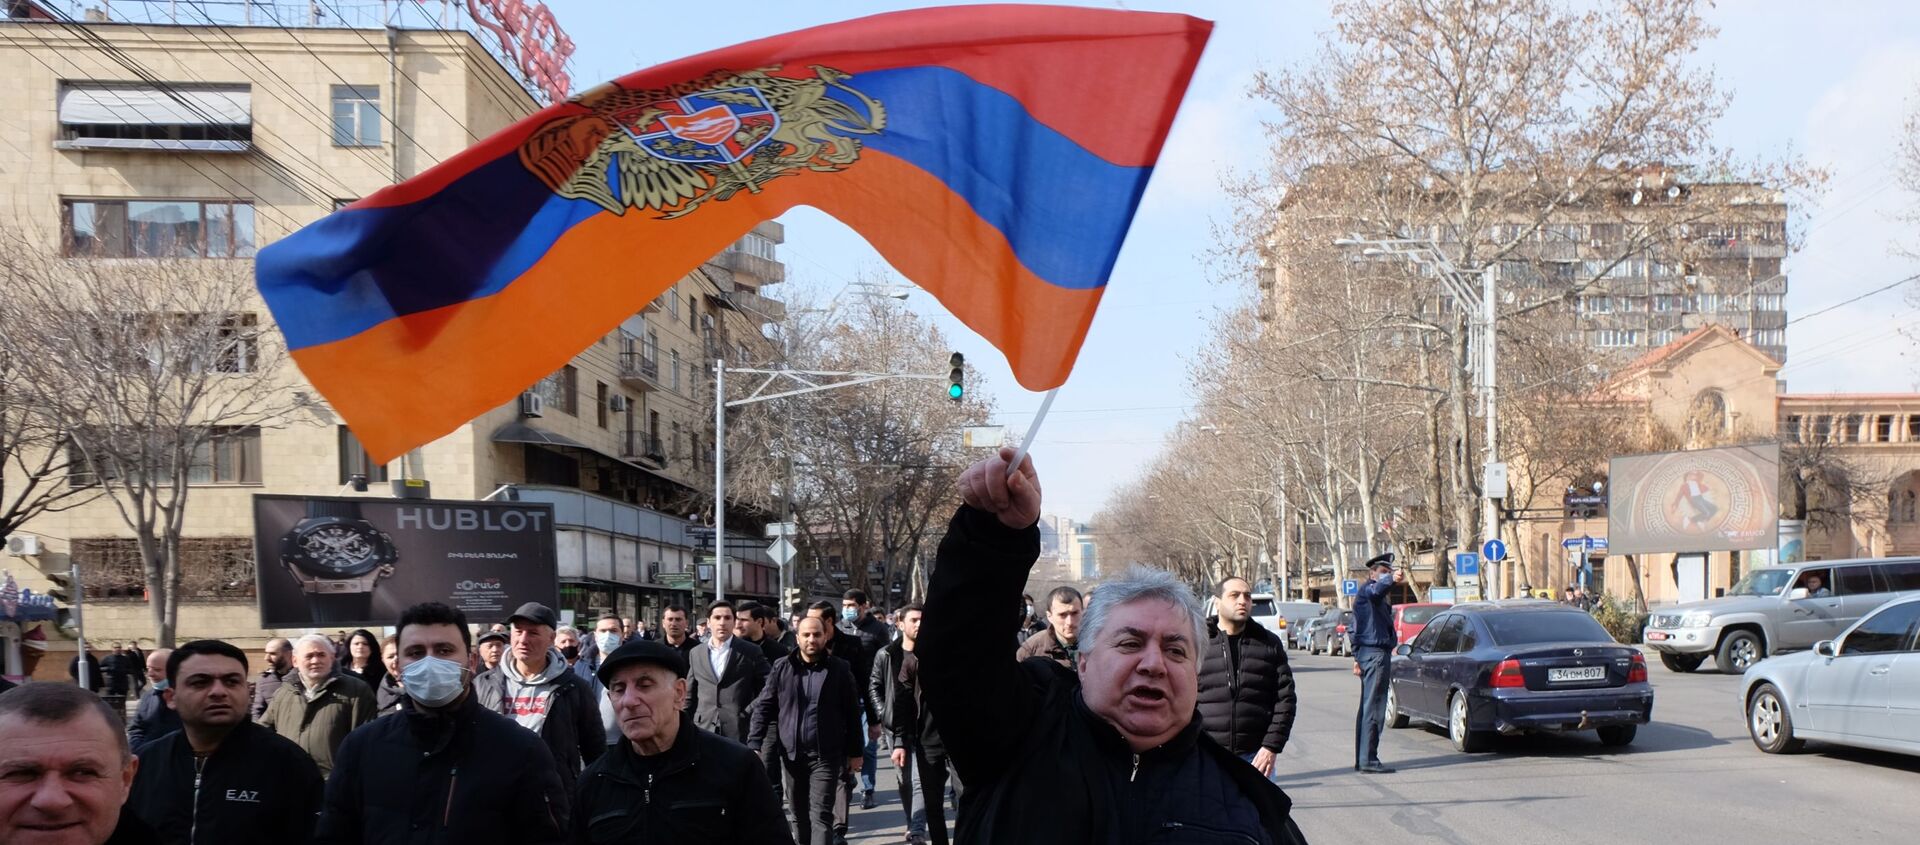 Участники митинга в Ереване, Армения - Sputnik Таджикистан, 1920, 25.02.2021